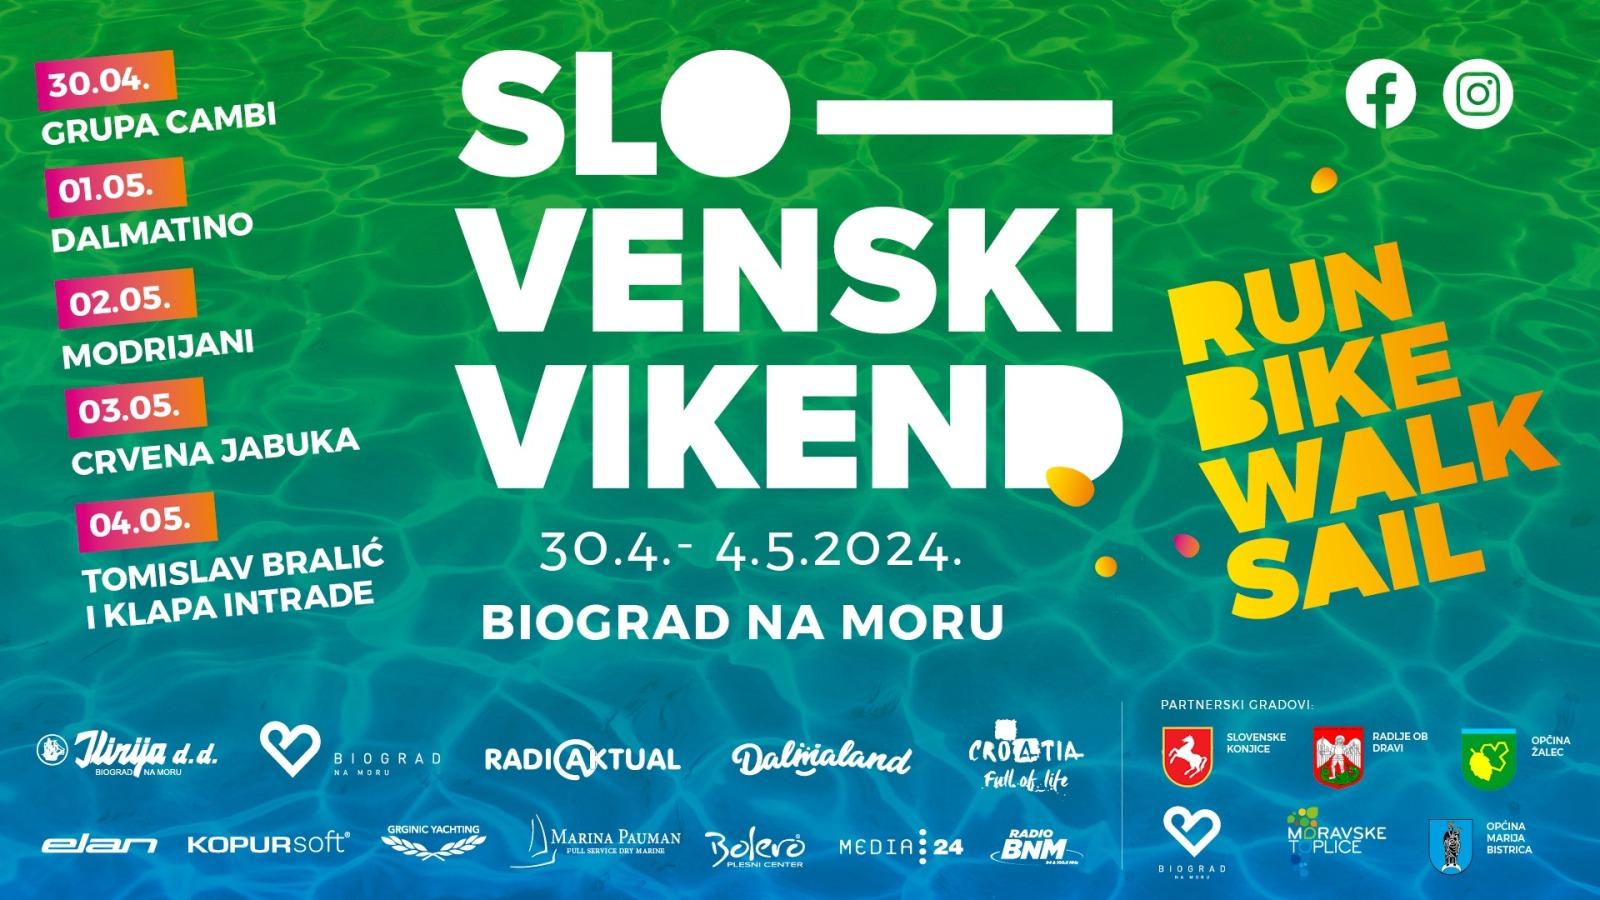 Slovenski vikend v Biogradu na Moru